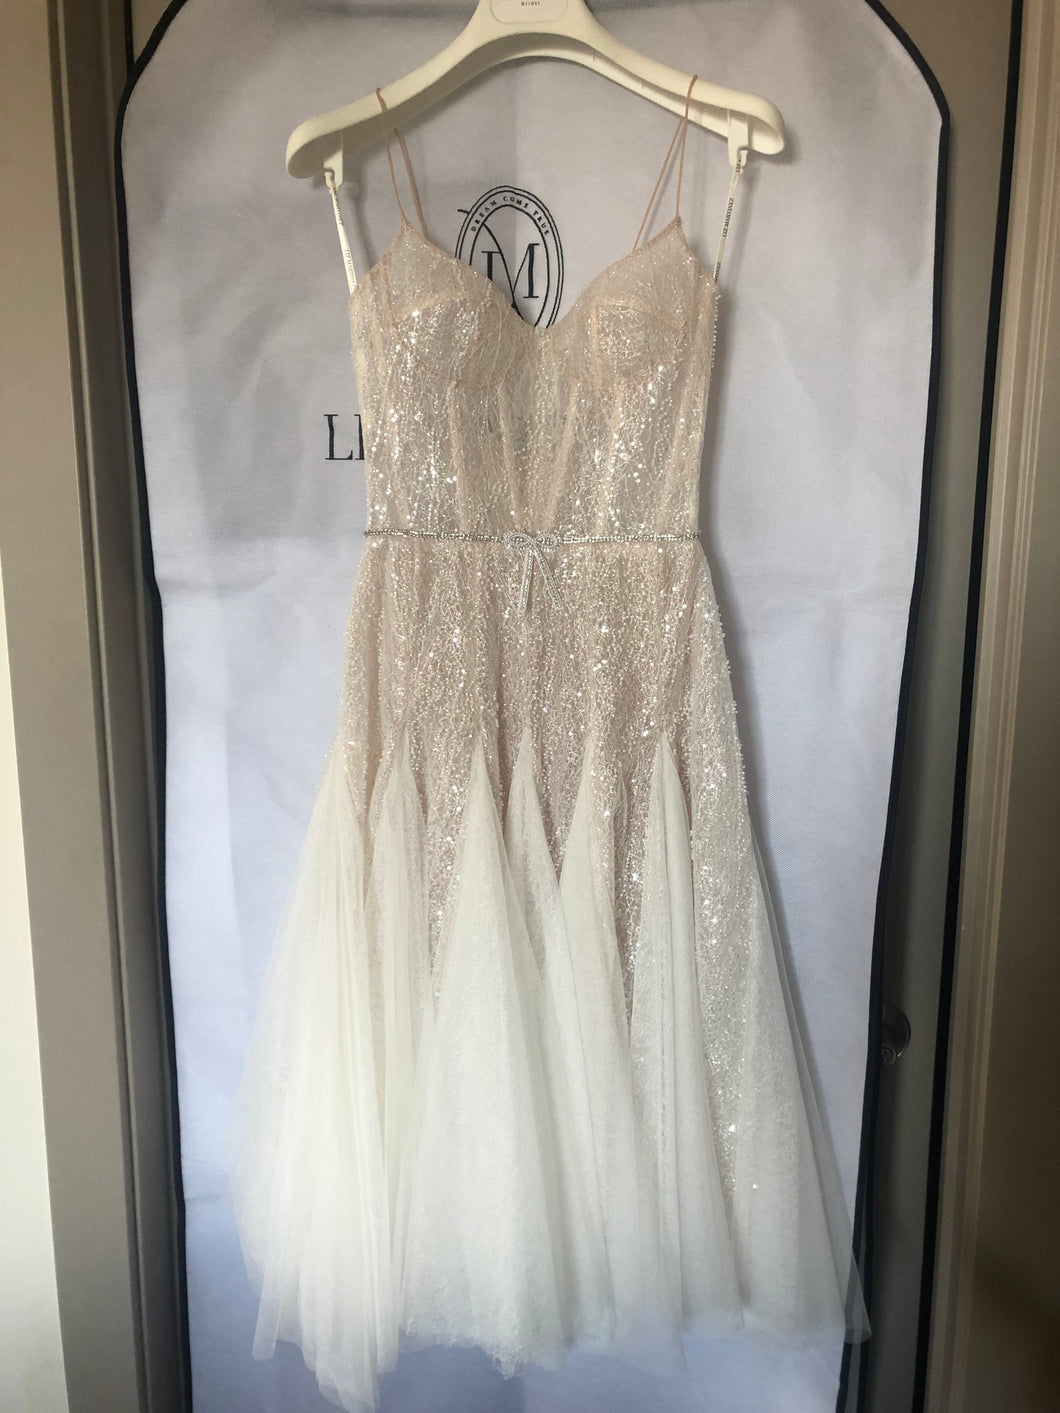 Liz martinez 'Flow' wedding dress size-04 NEW